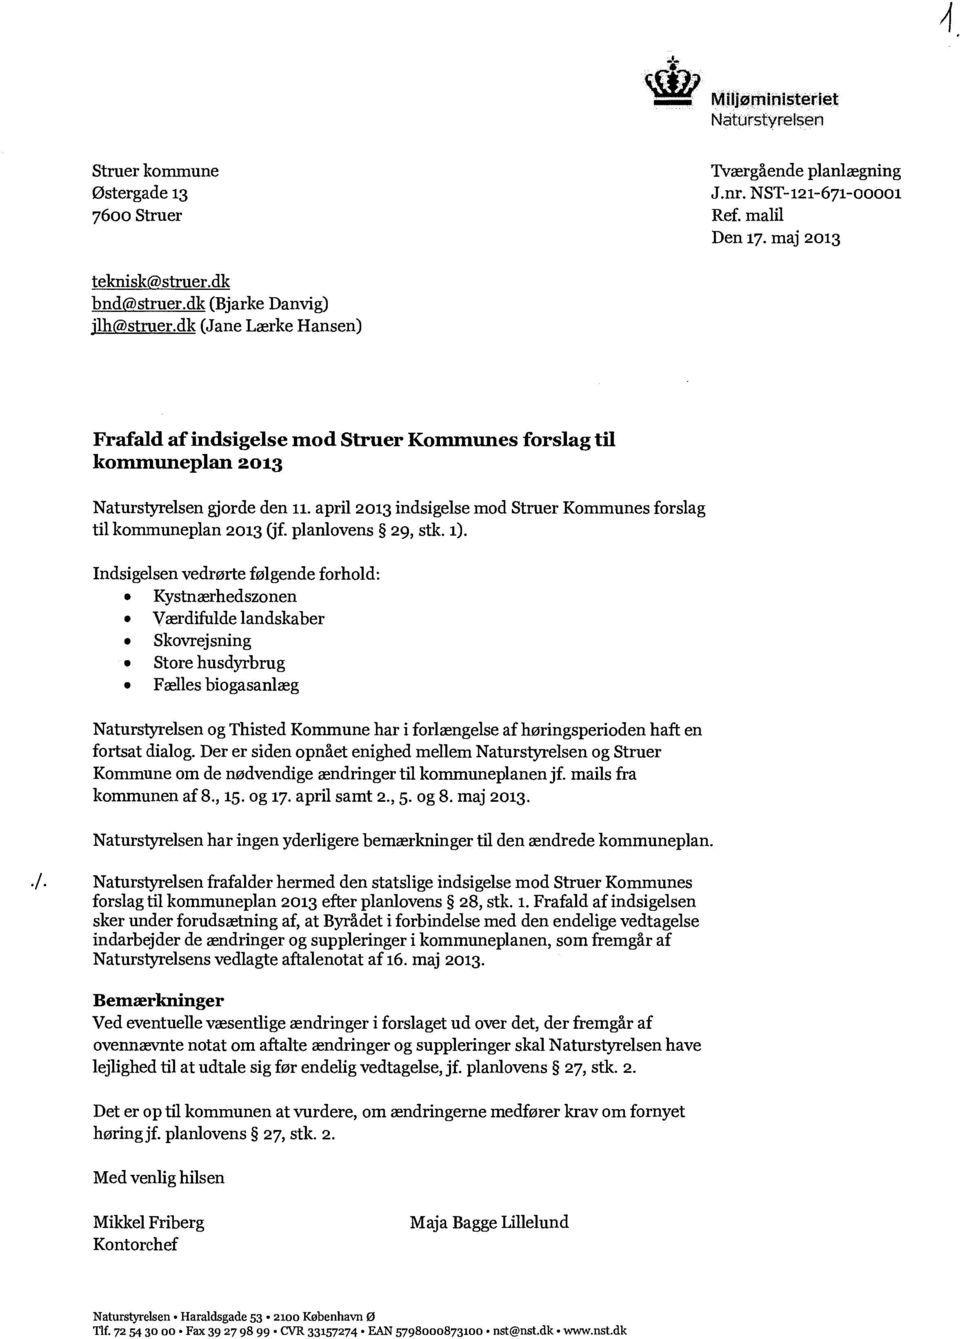 april 2013 indsigelse mod Struer Kommunes forslag til kommuneplan 2013 (jf. planlovens 29, stk. 1).